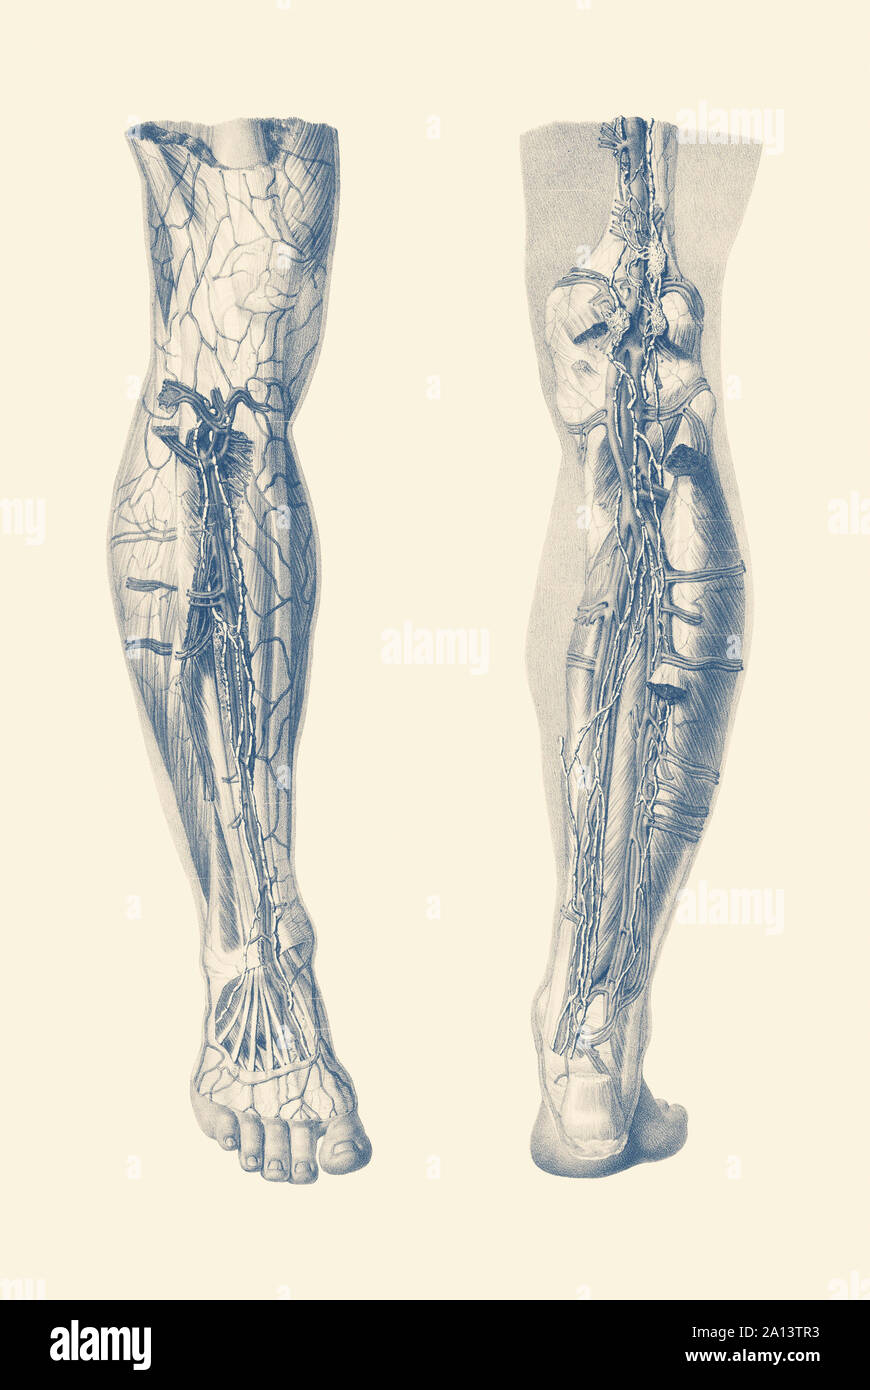 Vintage imprimir mostrando una vista dual del sistema muscular humano de la pierna derecha. Foto de stock